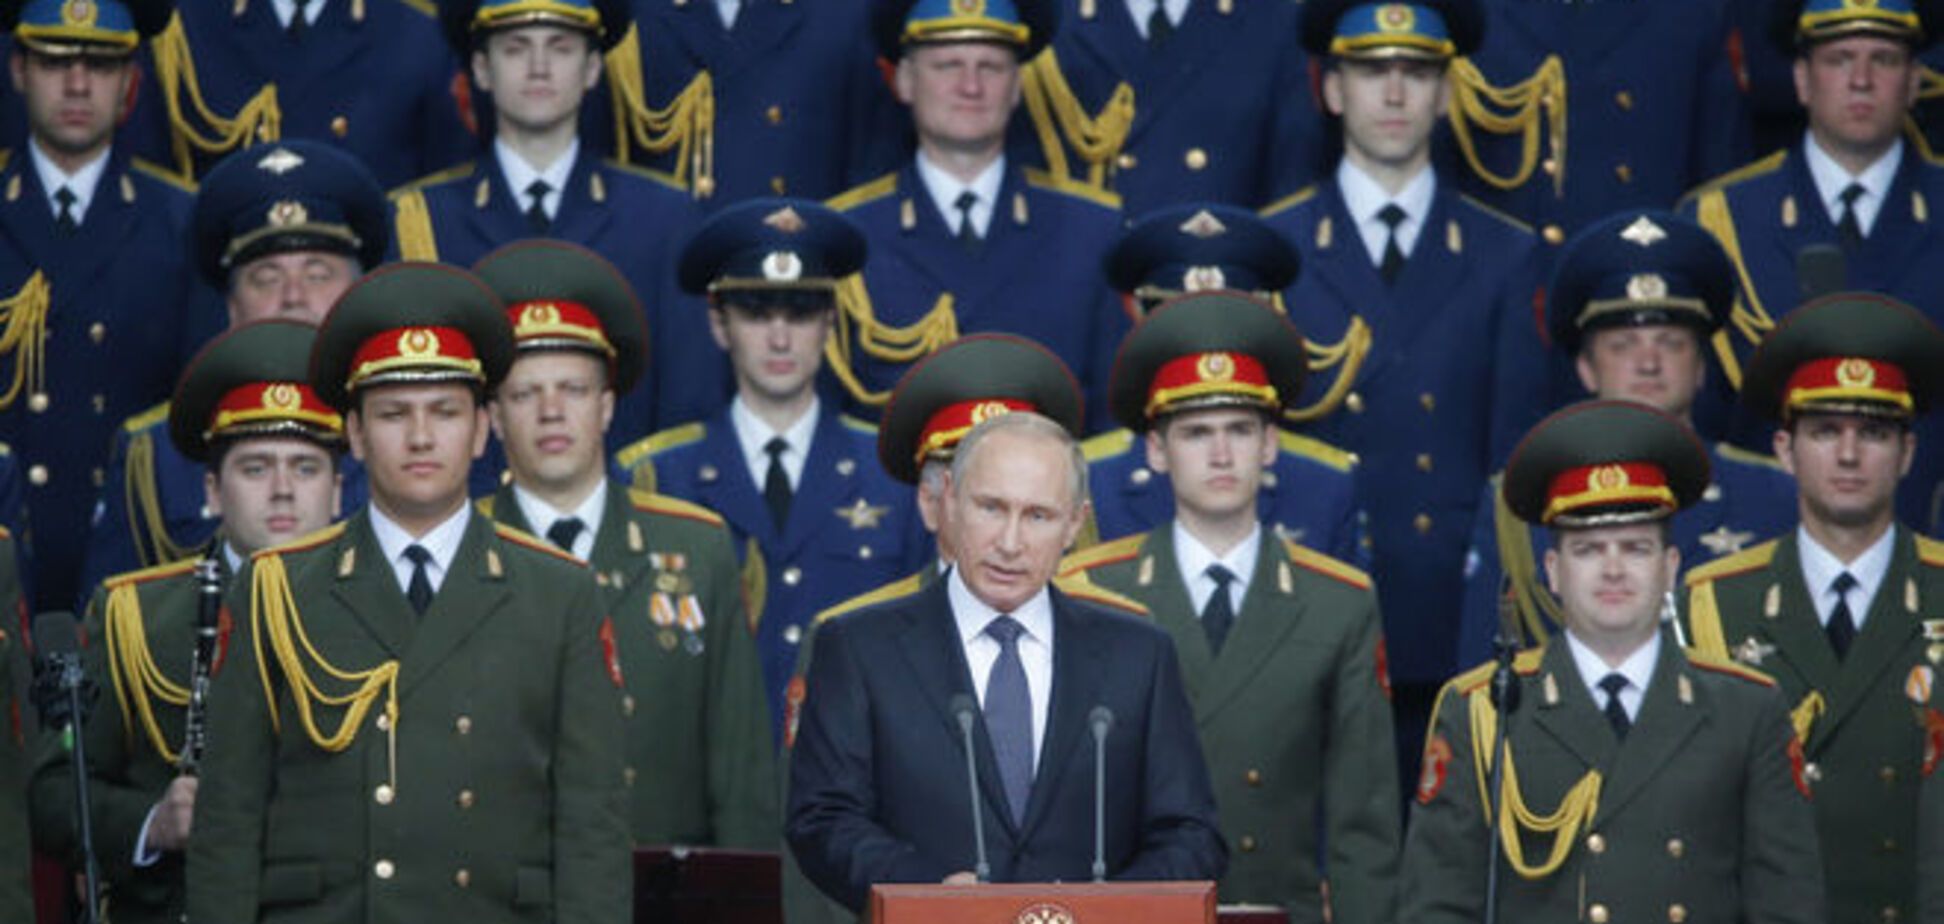 Кремль рассматривает конфликт в Украине как часть мировой войны - Фельгенгауэр